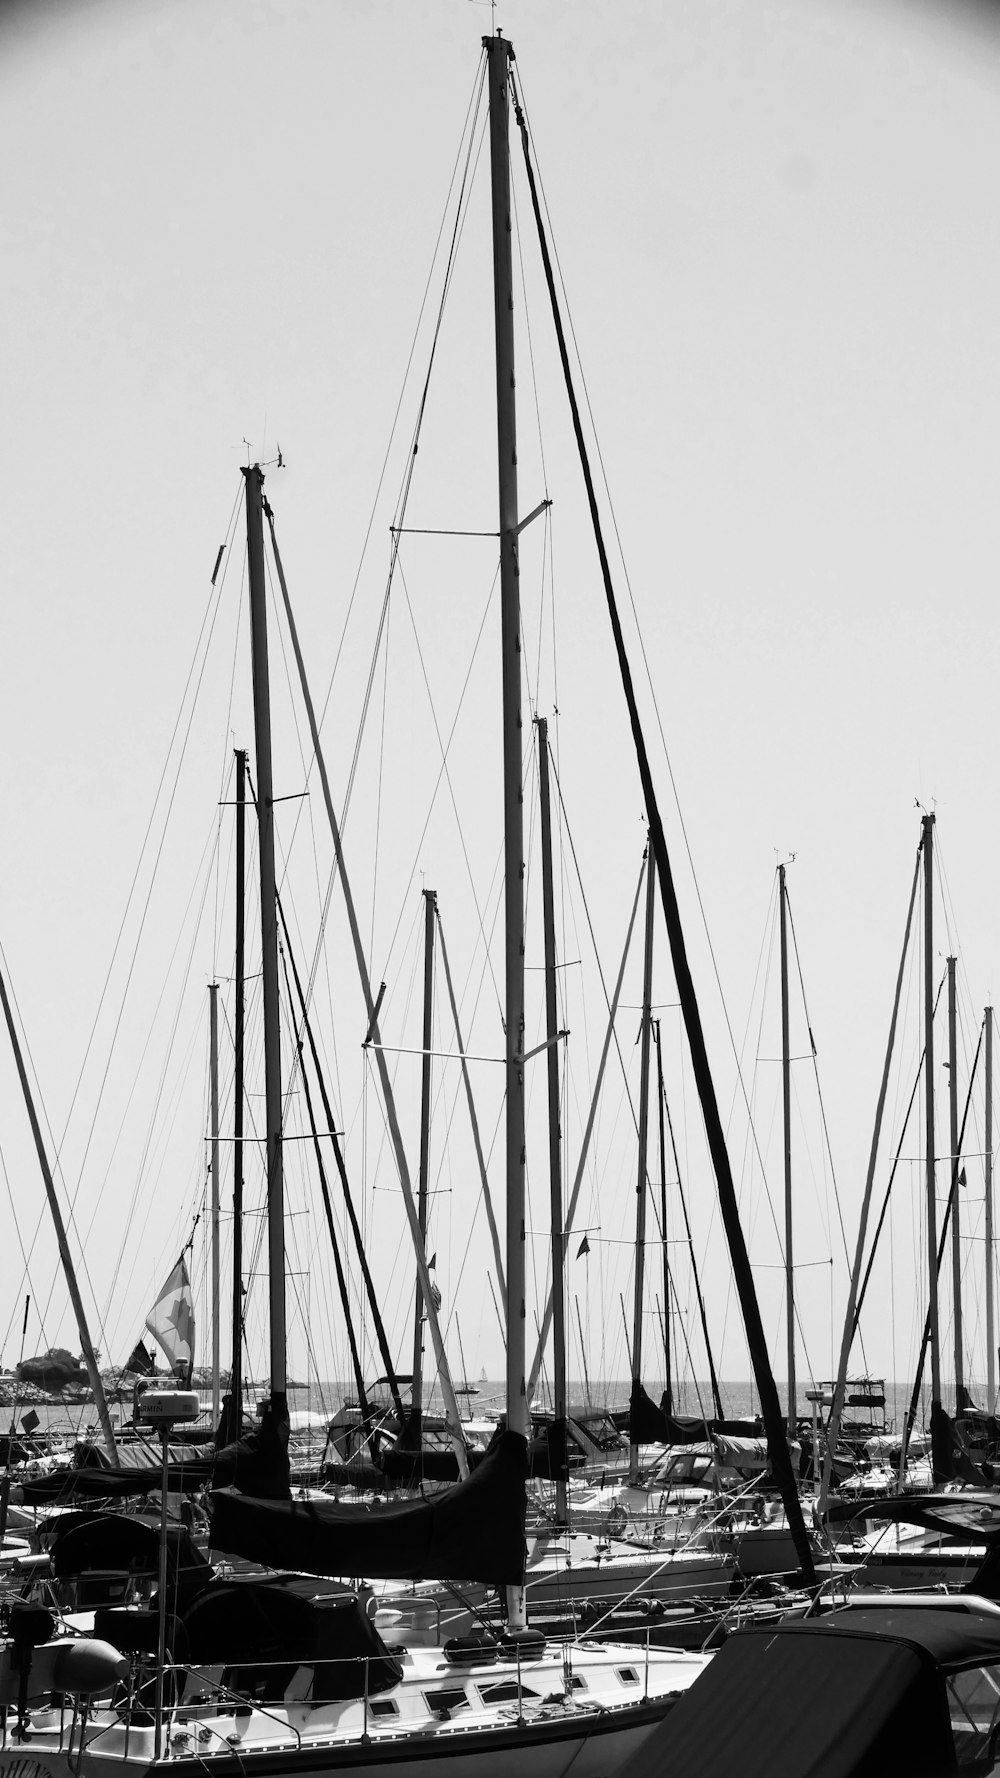 Yachts au port en niveaux de gris photo